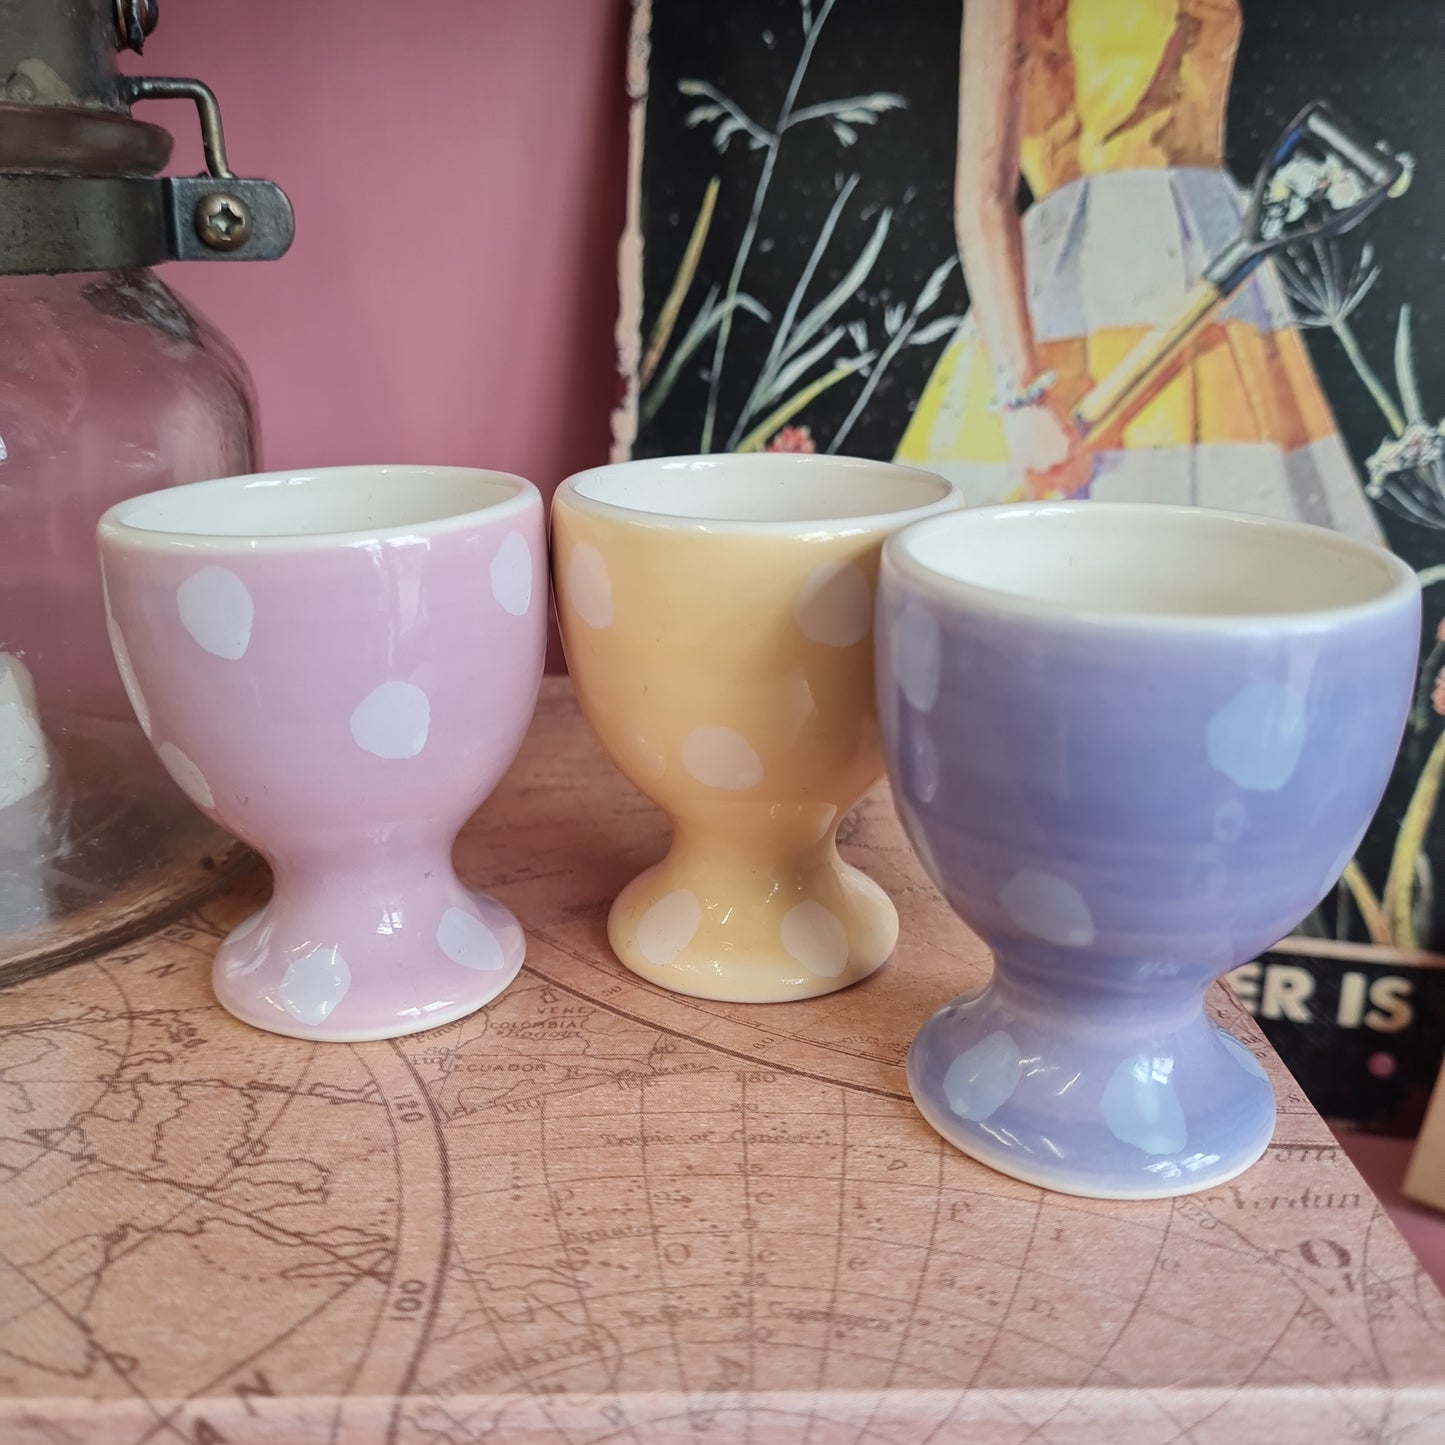 Polka dot egg cups